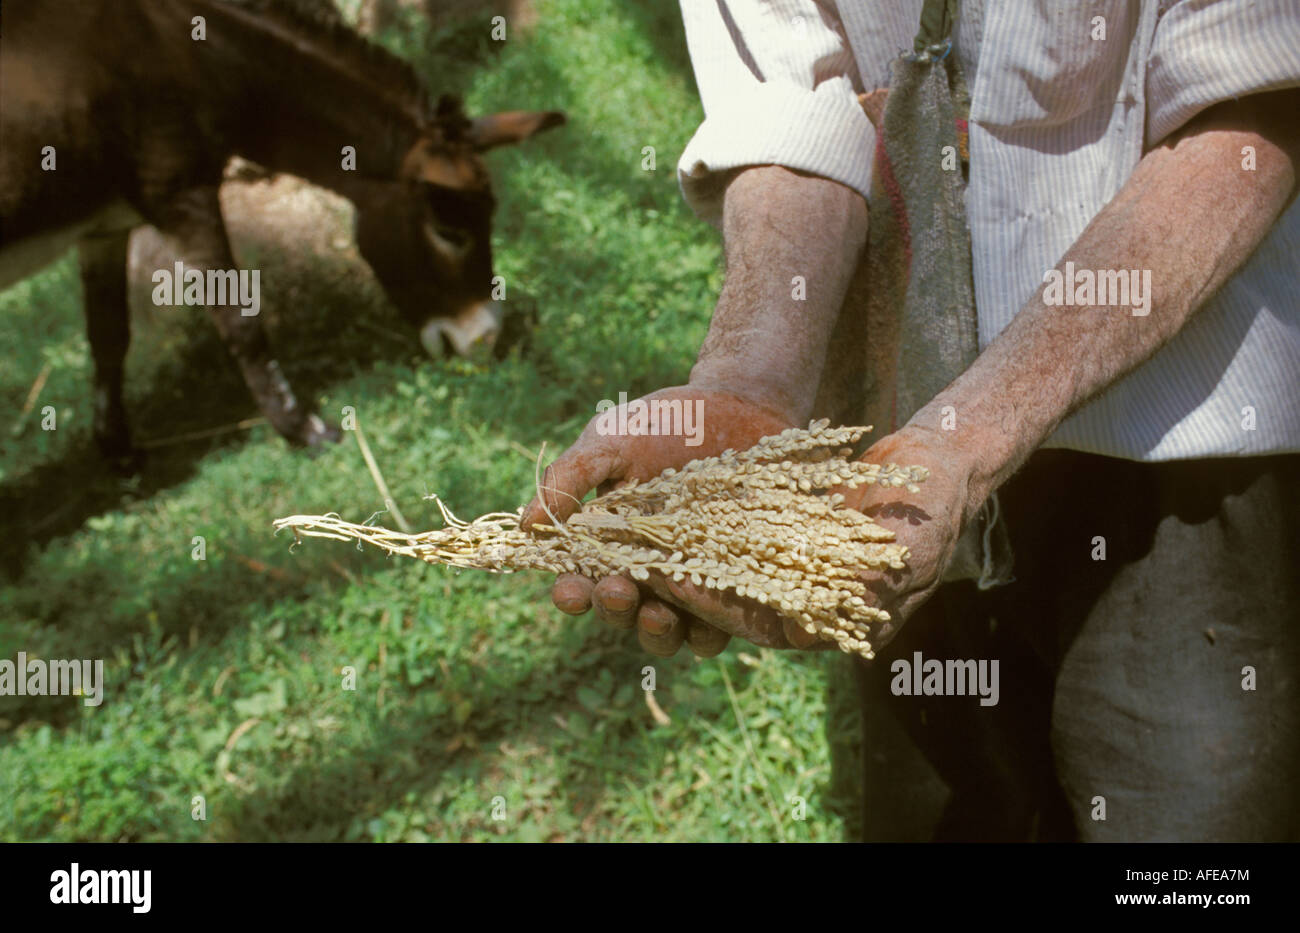 Tunisie Tozeur, désert du Sahara, Man holding masculin graines de palmier pour fertiliser les arbres femelles Banque D'Images